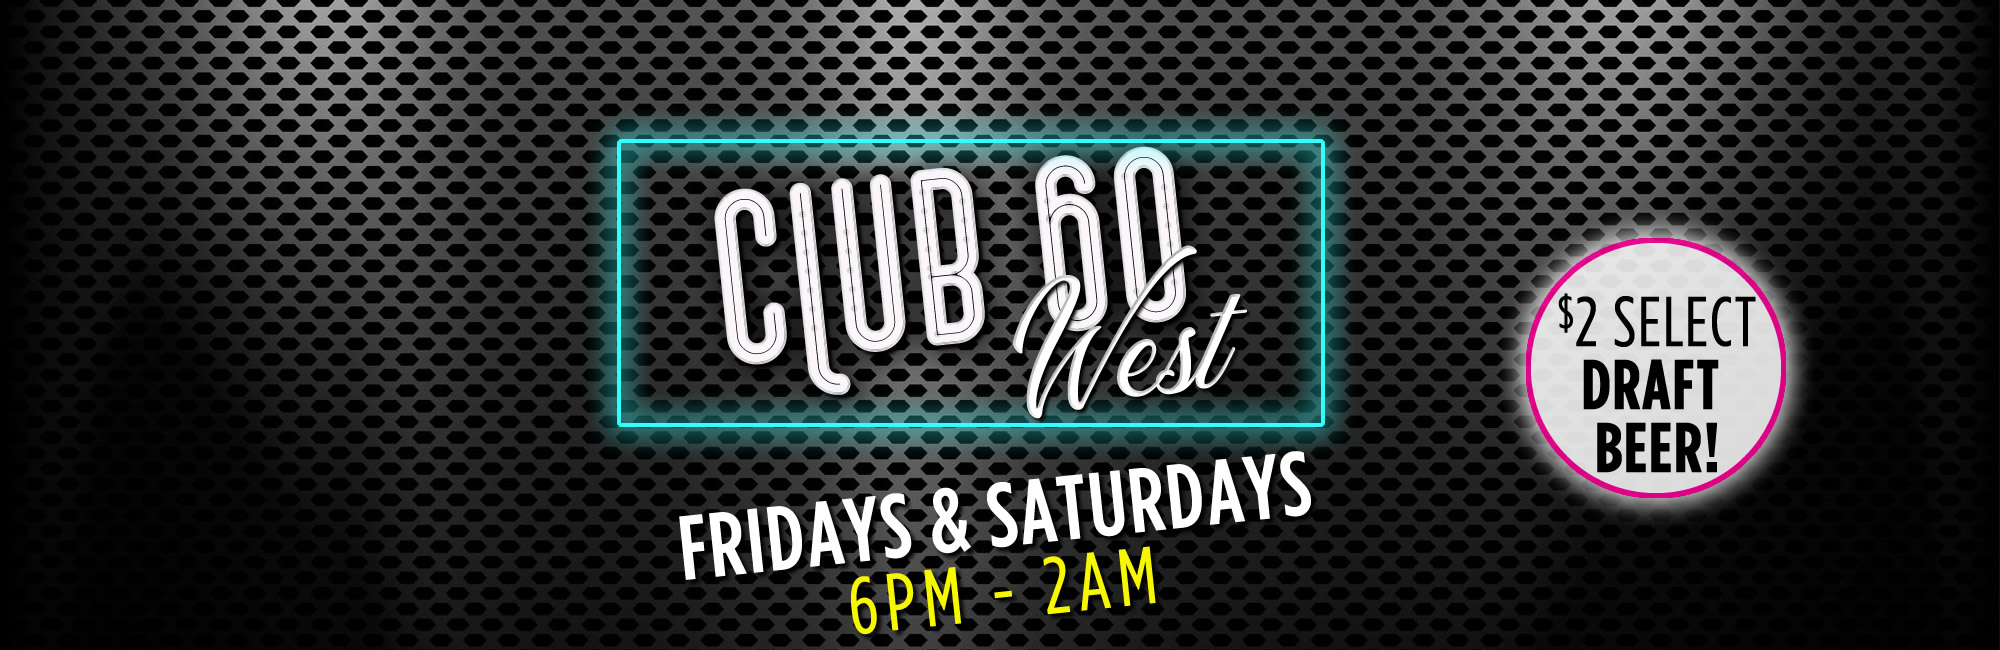 Club 60 West 